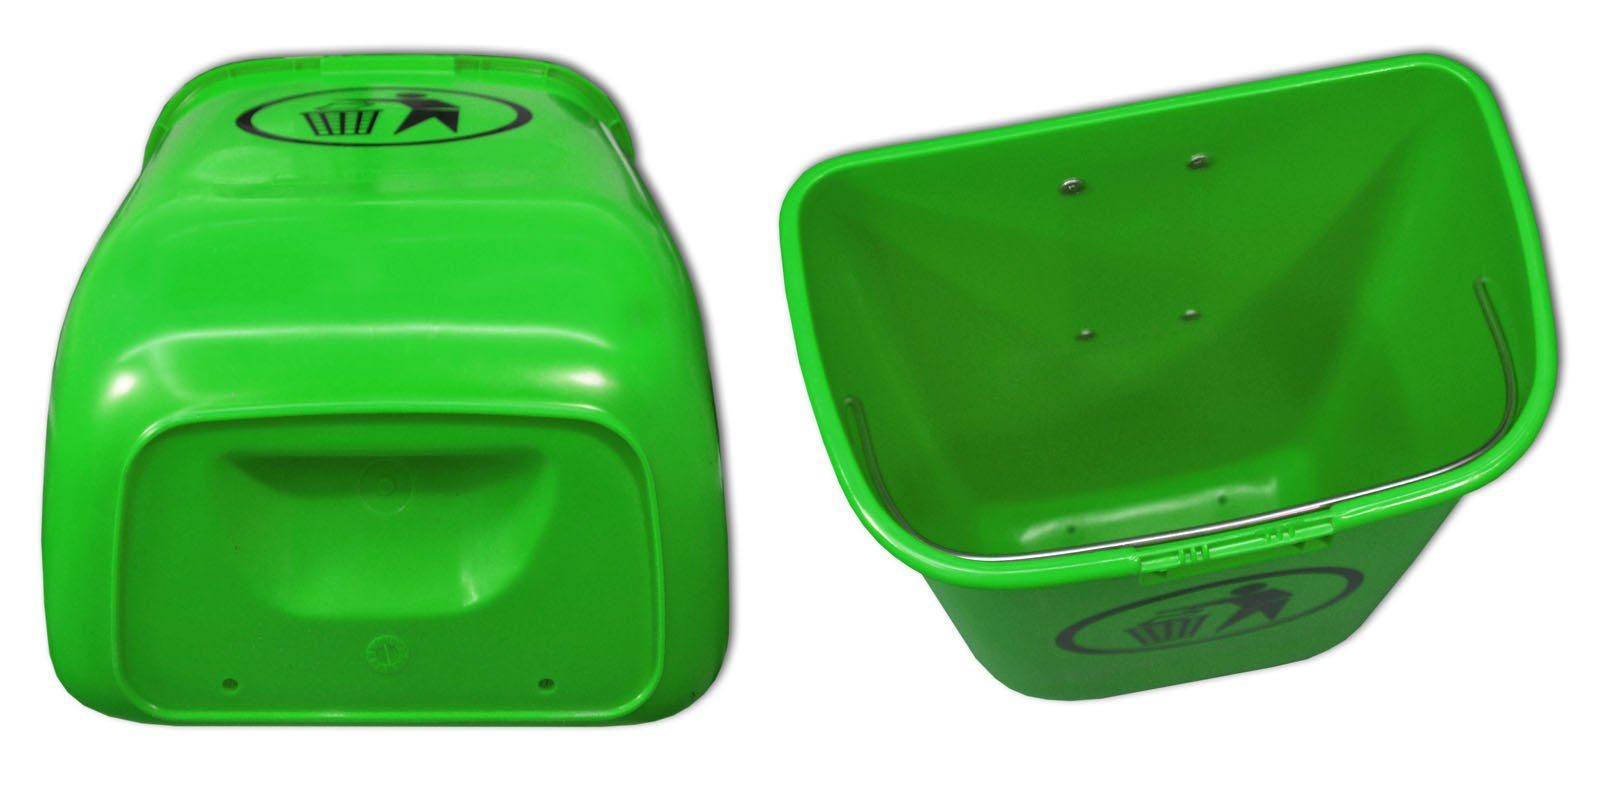 SULO Mülleimer mit Papierkorb Abfallbehälter Original Set Sulo Regenhaube grün